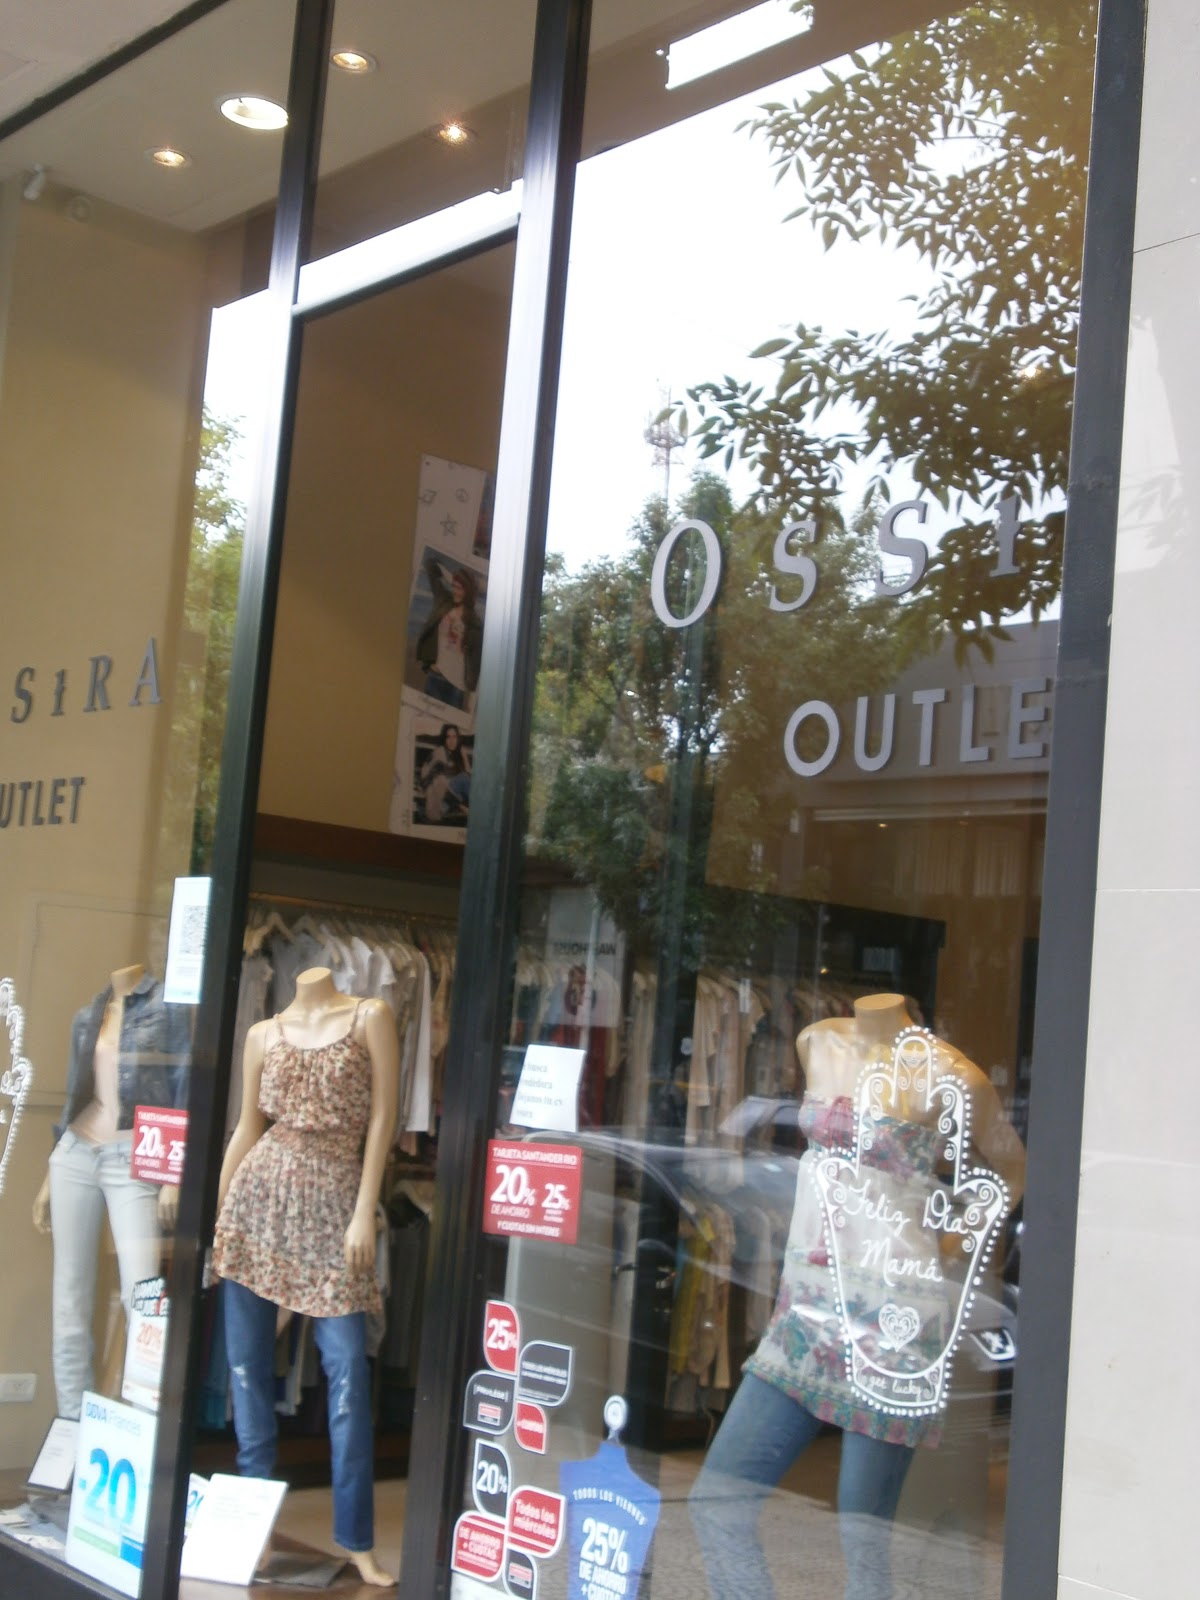 Outlets en Zona de Palermo, Aires, ventas ropas de moda